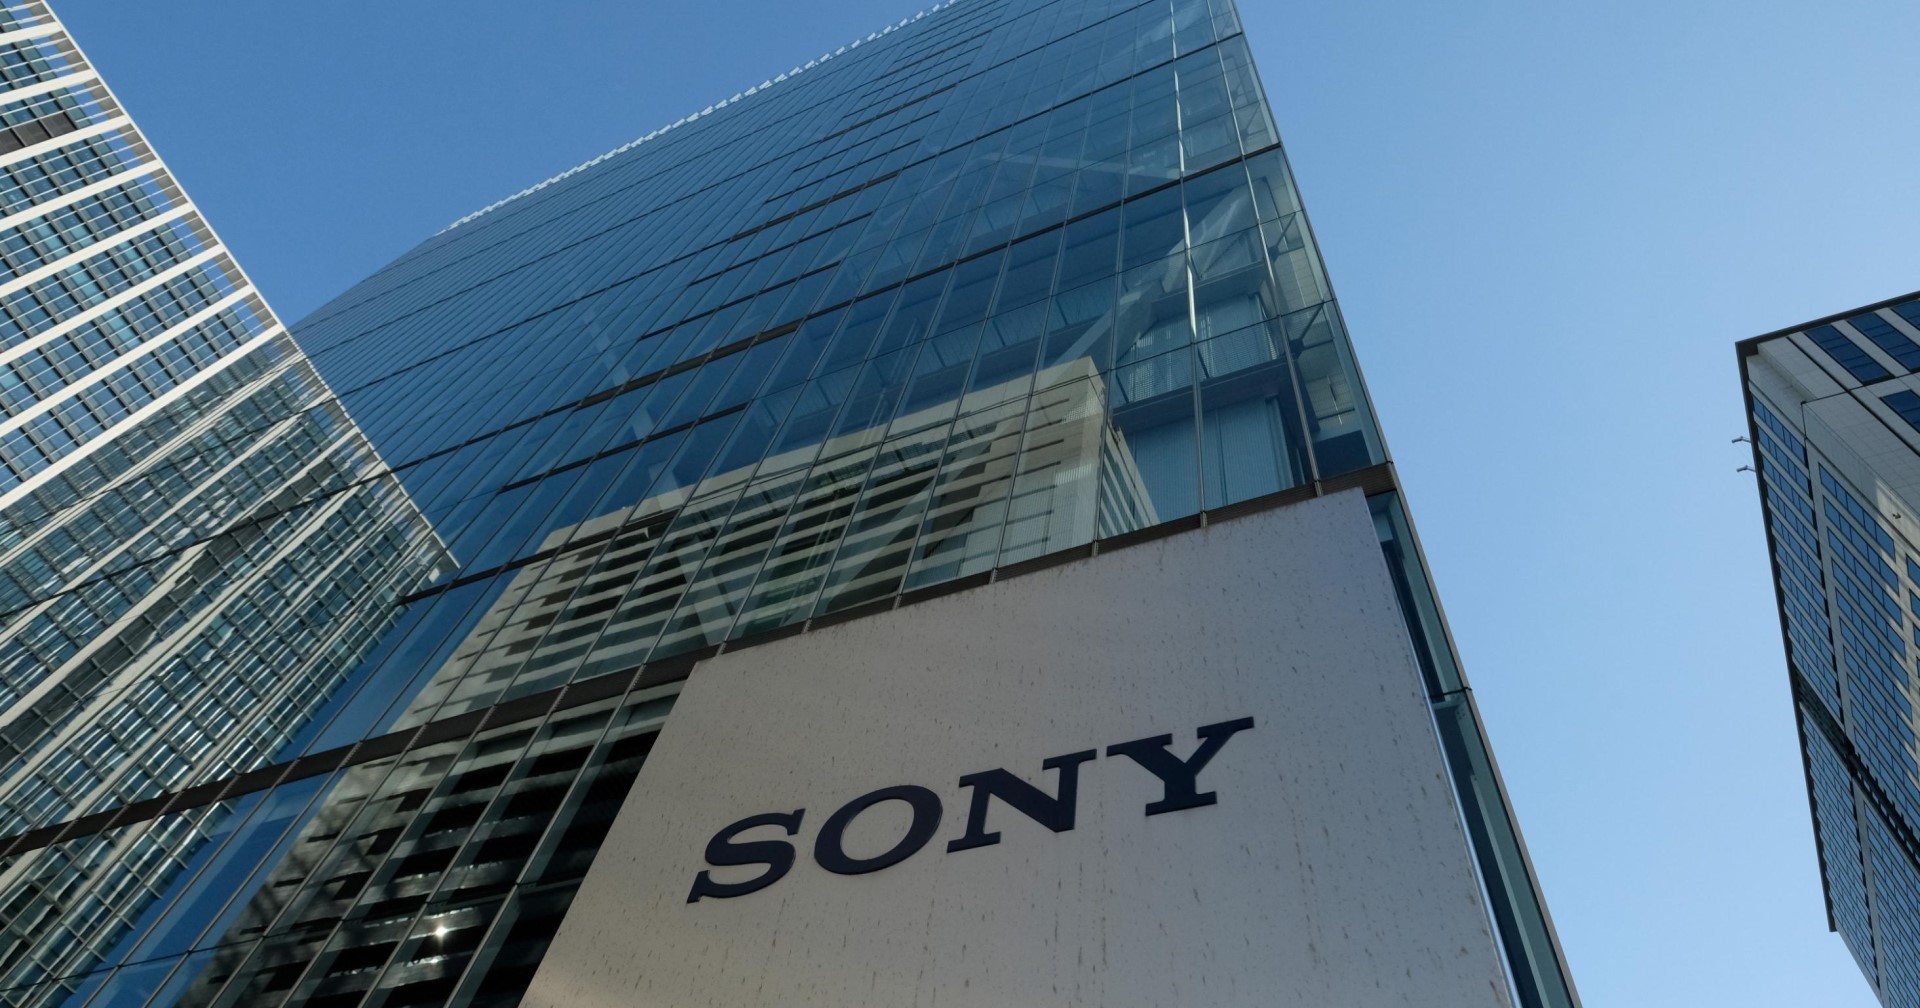 Sony พยายามยุติข้อกล่าวหากรณีเลือกปฏิบัติทางเพศในบริษัท